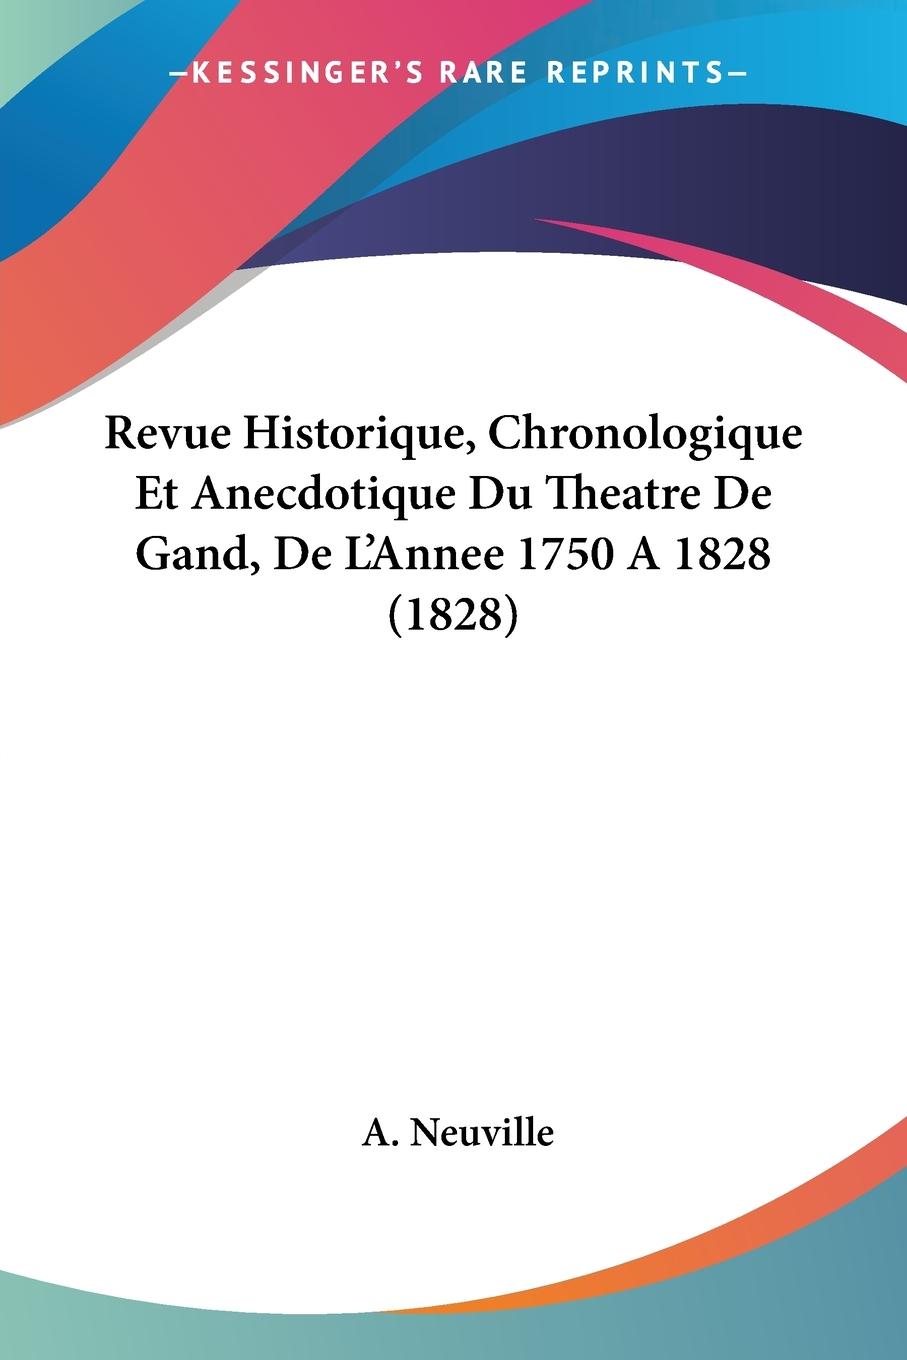 Revue Historique, Chronologique Et Anecdotique Du Theatre De Gand, De L Annee 1750 A 1828 (1828) - Neuville, A.